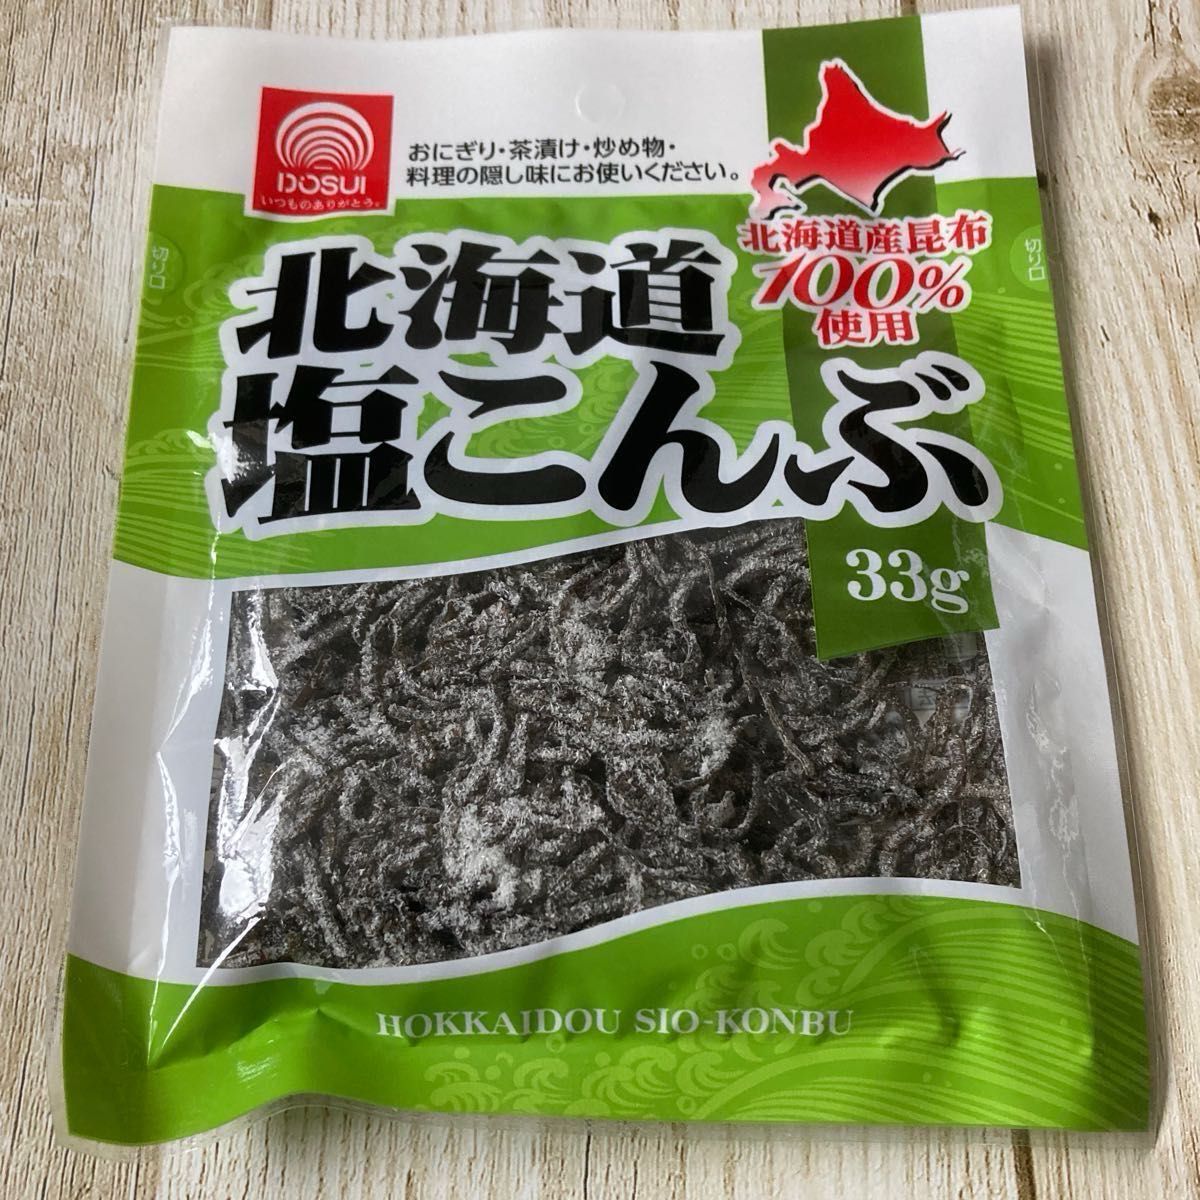 北海道 塩こんぶ 北海道産昆布100% 33g 6袋セット